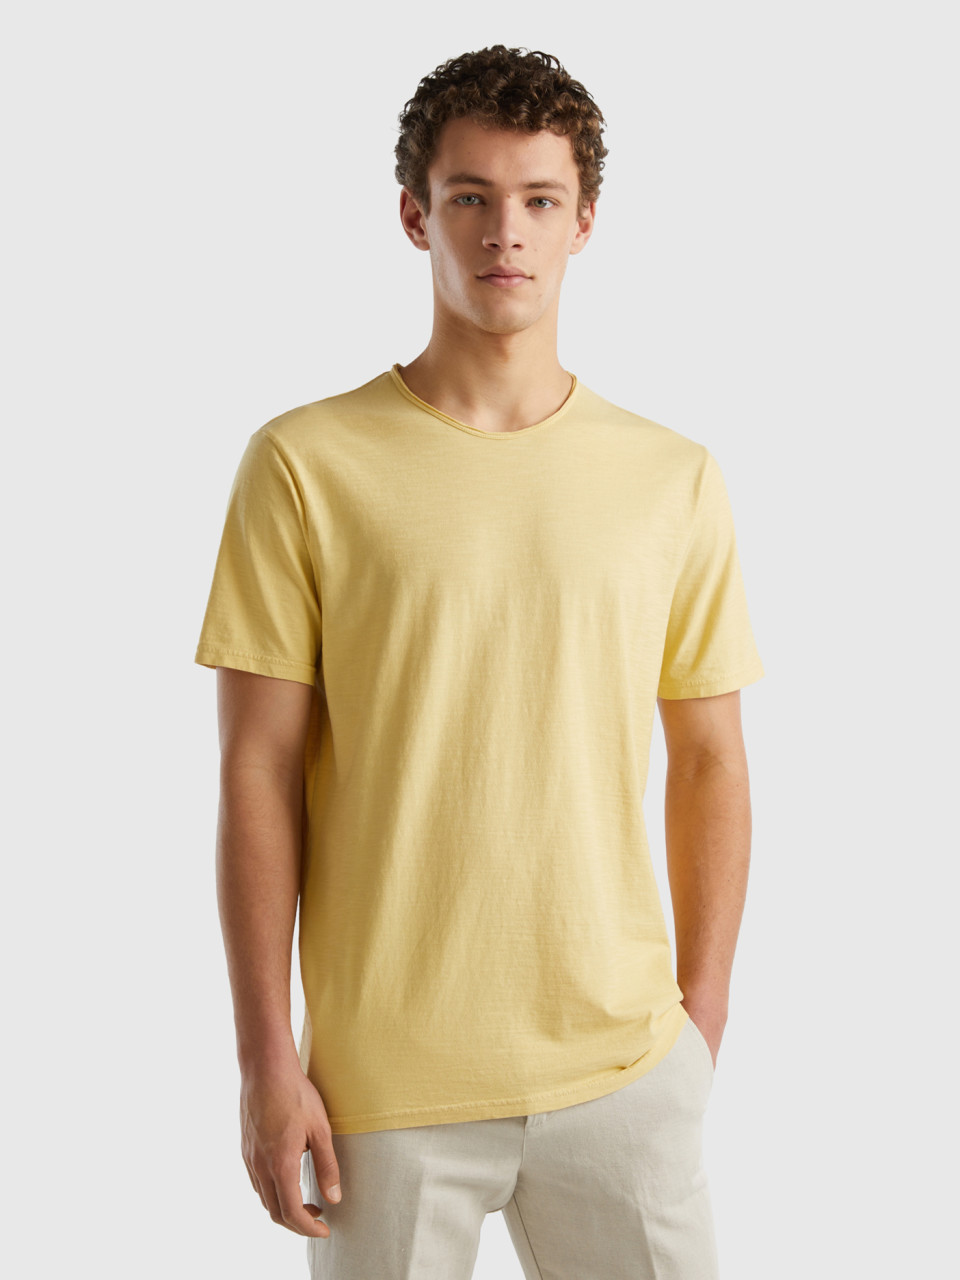 Benetton, Camiseta Amarillo Pastel De Algodón Flameado, Amarillo, Hombre